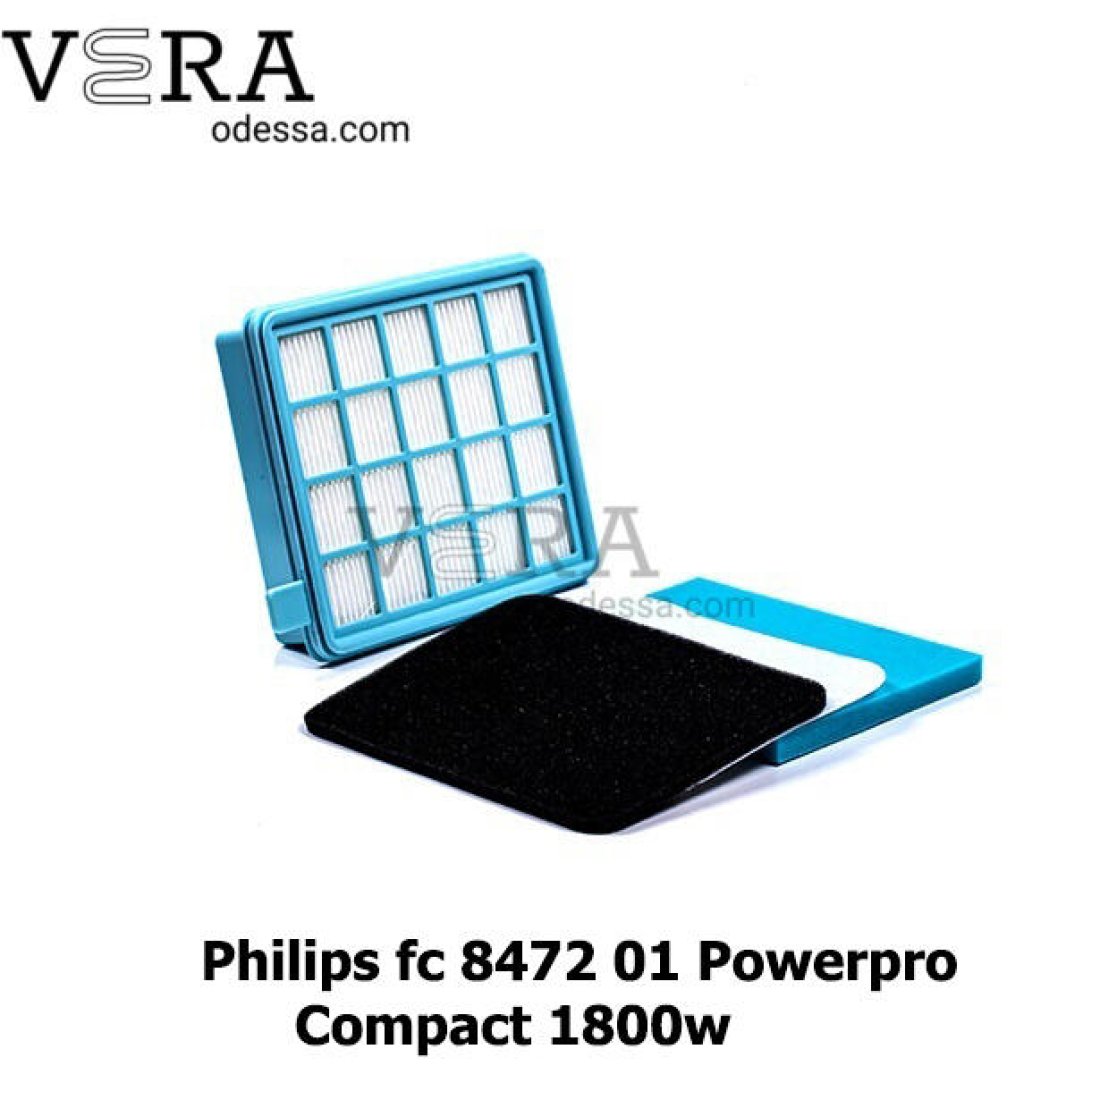 Фильтр для пылесоса Philips fc 8472 01 Powerpro Compact 1800w оптом, фотография 1